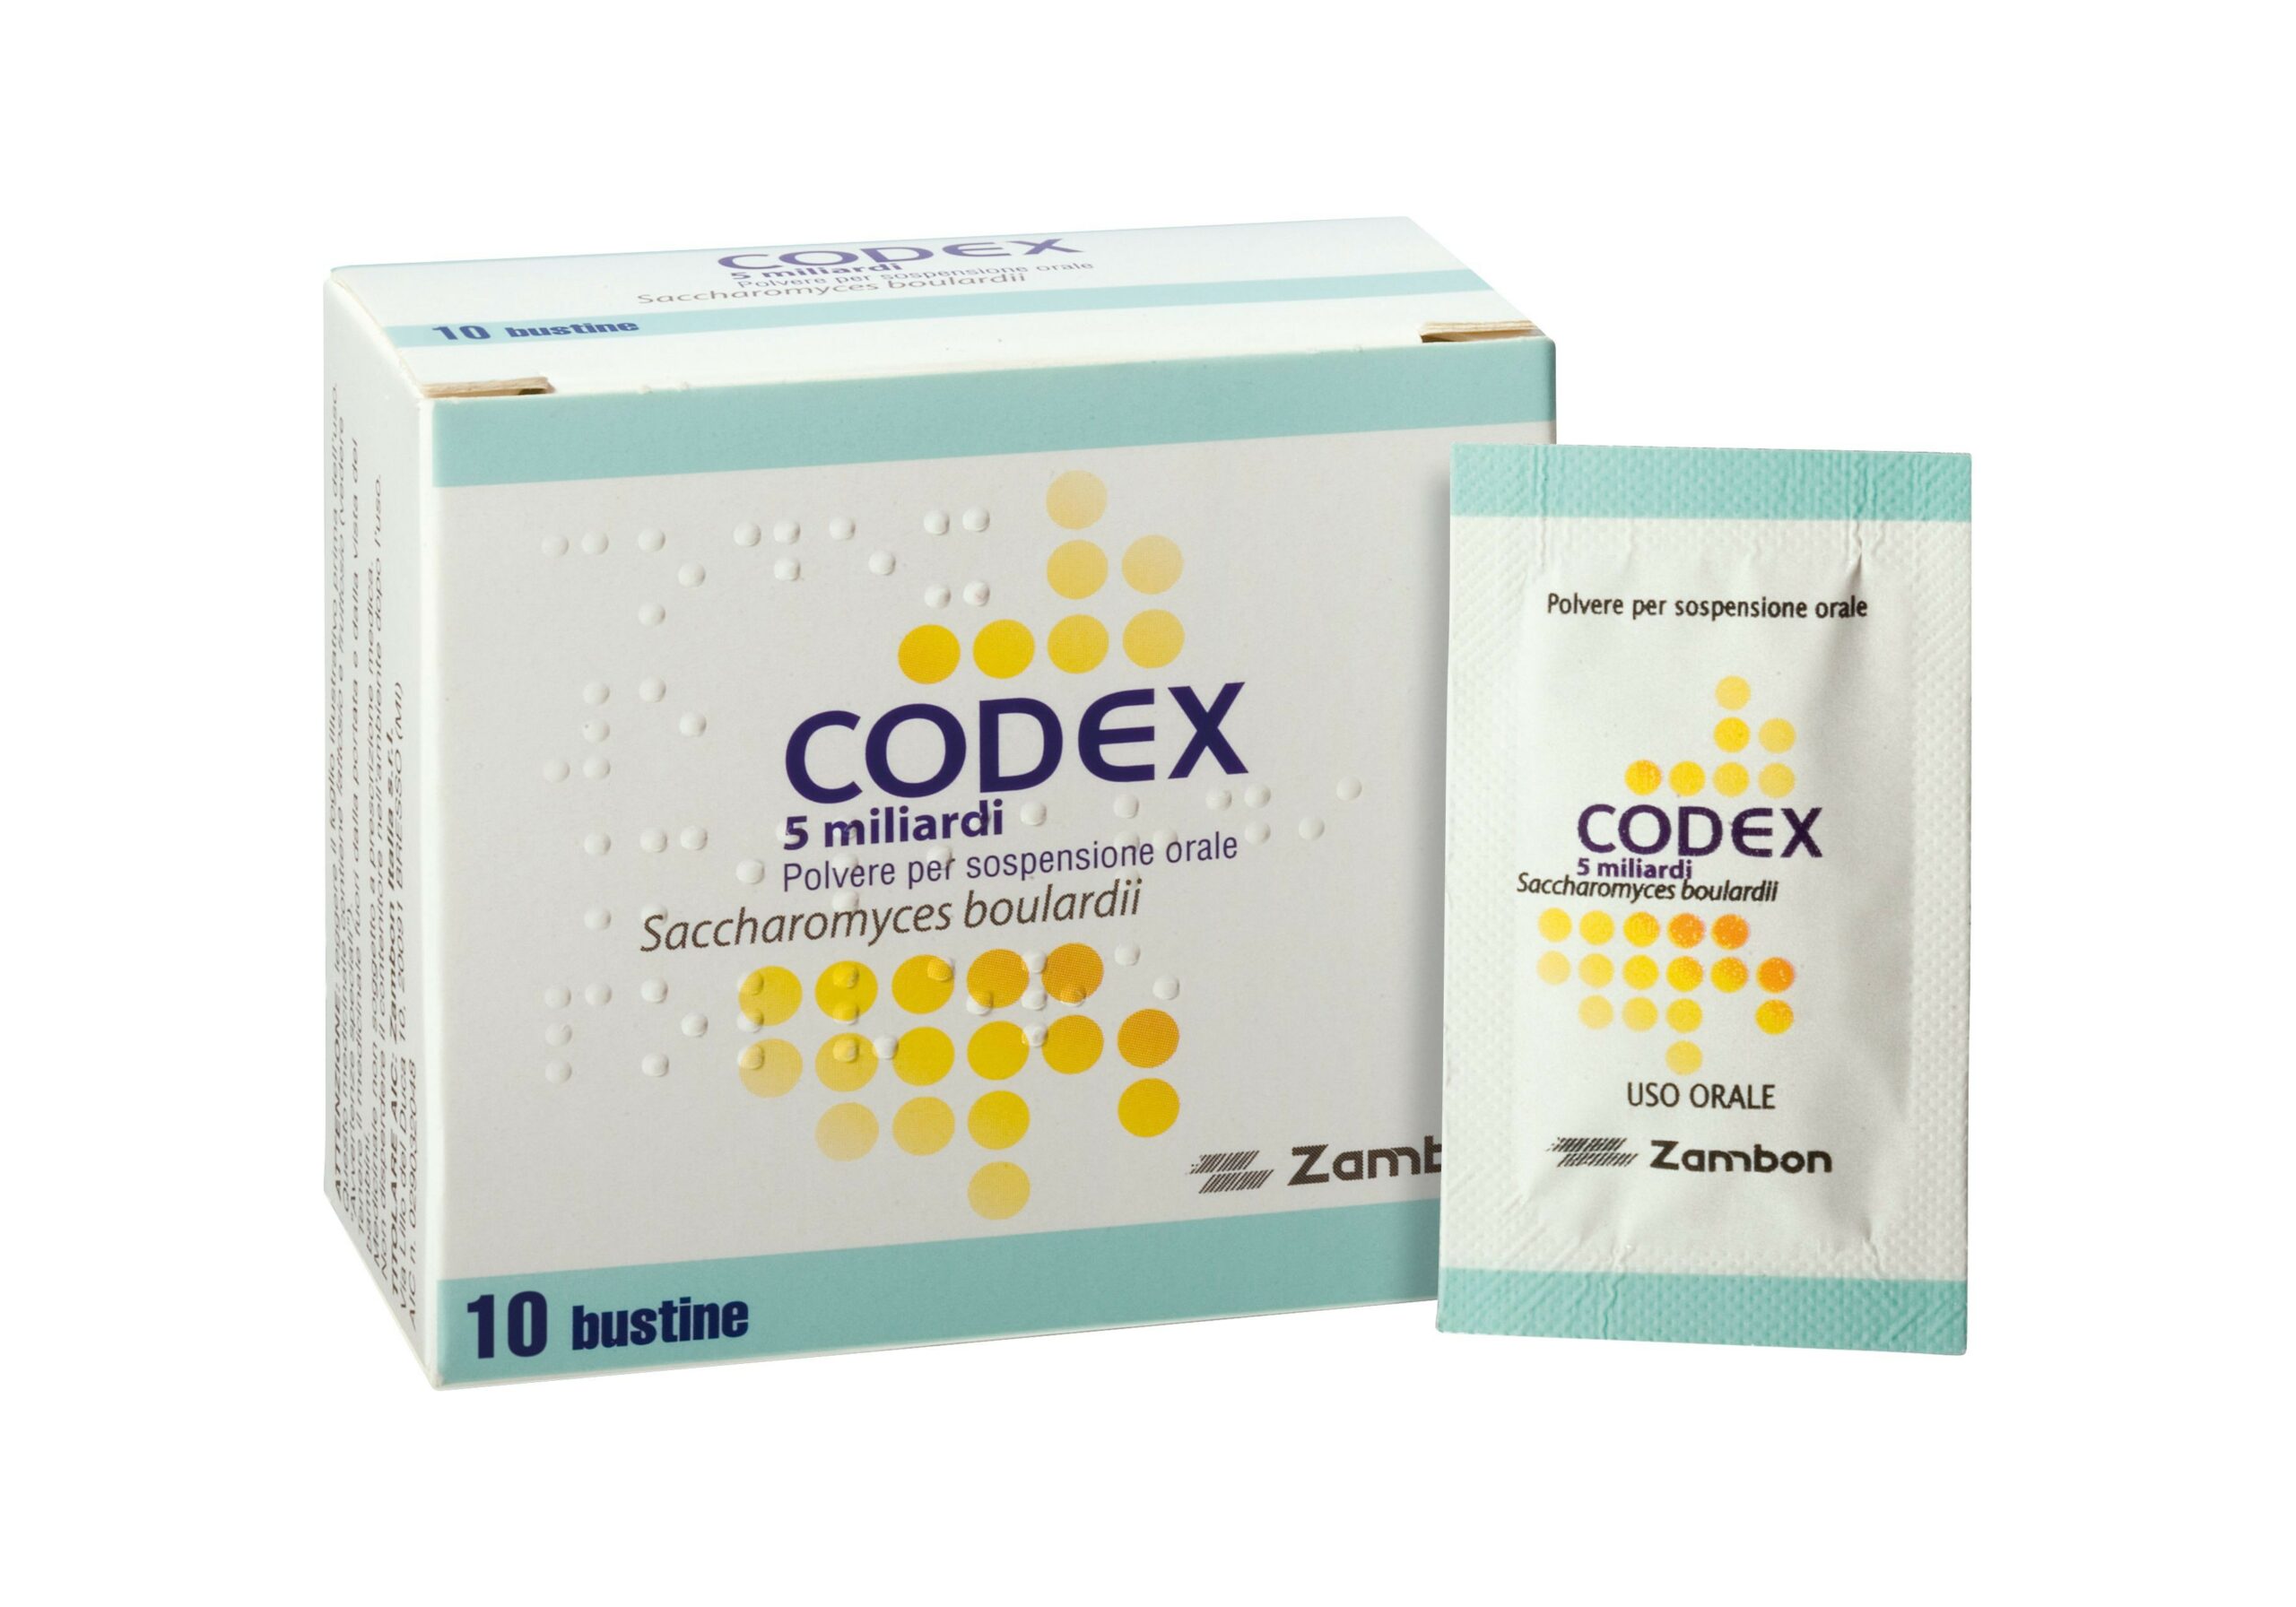 Quanto costa Codex 30 capsule?